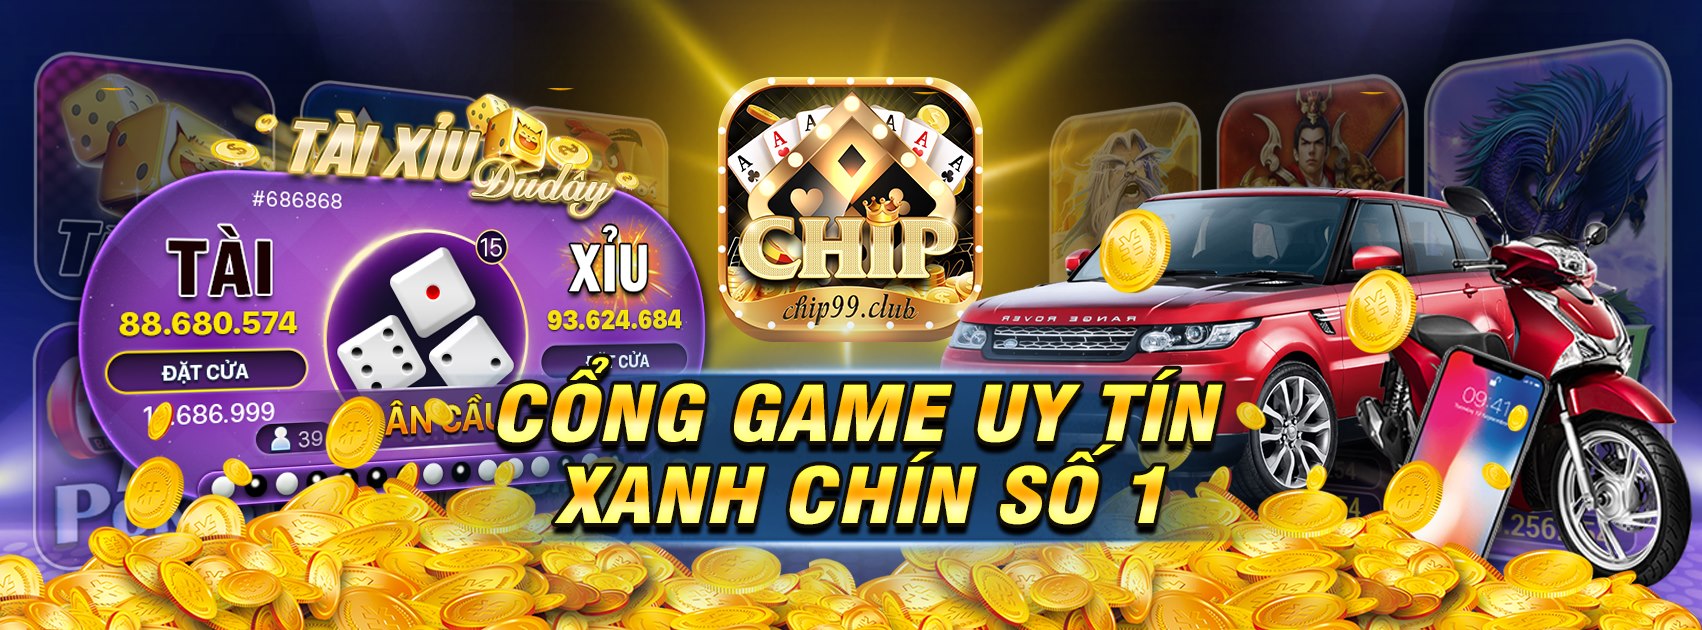 Chip99 – Game bài Chip99: Macao lên tiếng